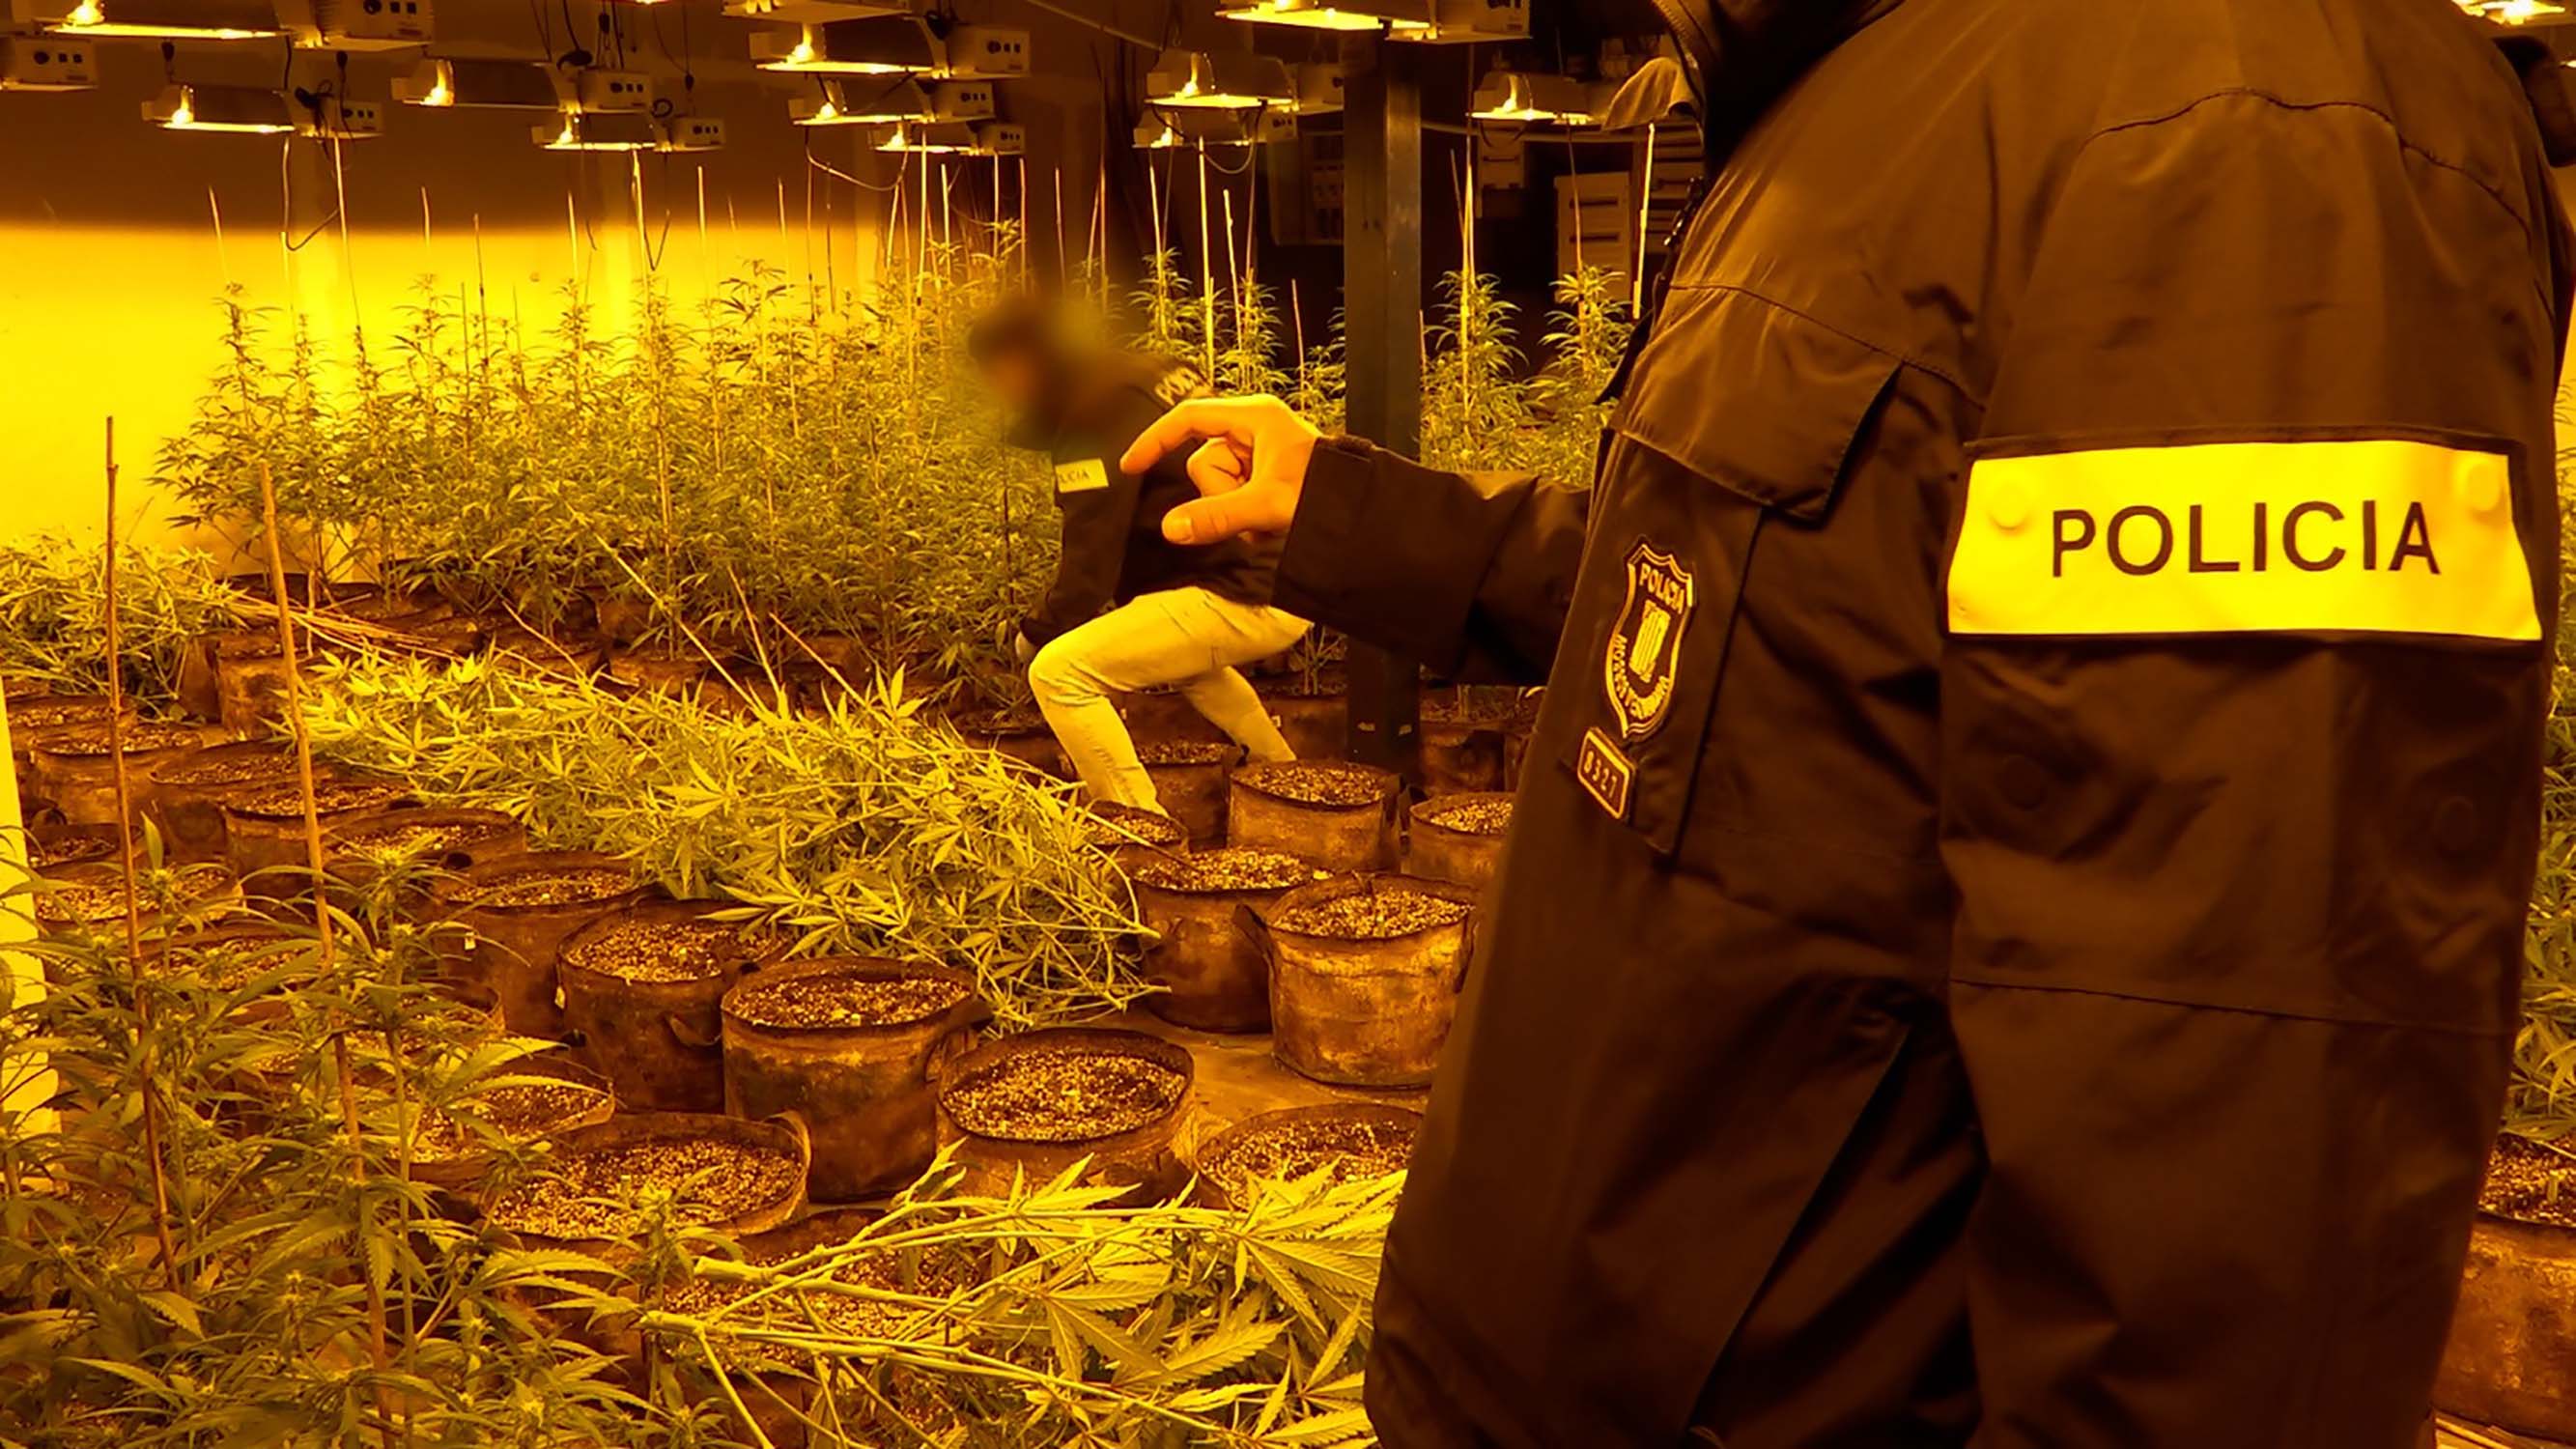 Els Mossos busquen empreses que destrueixin la marihuana que intervenen en plantacions arreu del país